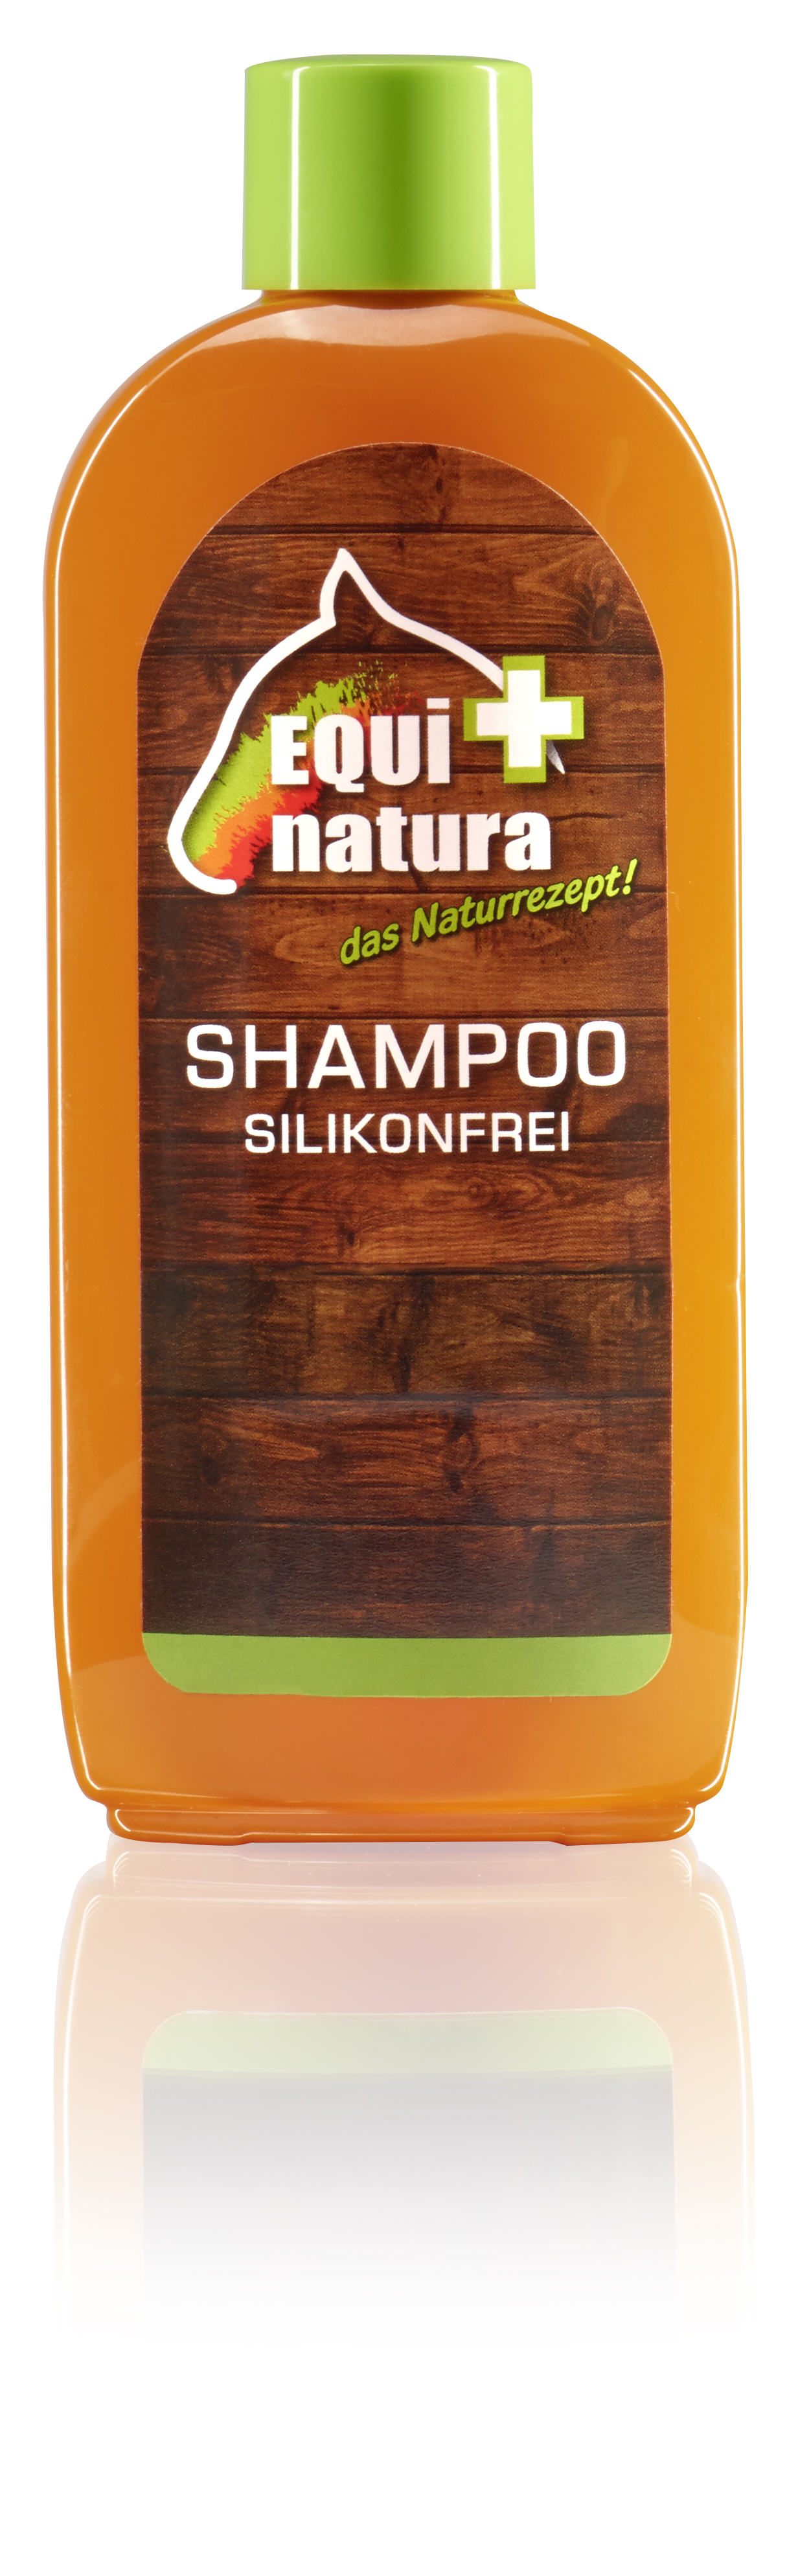 EQUINATURA Shampoo silikonfrei